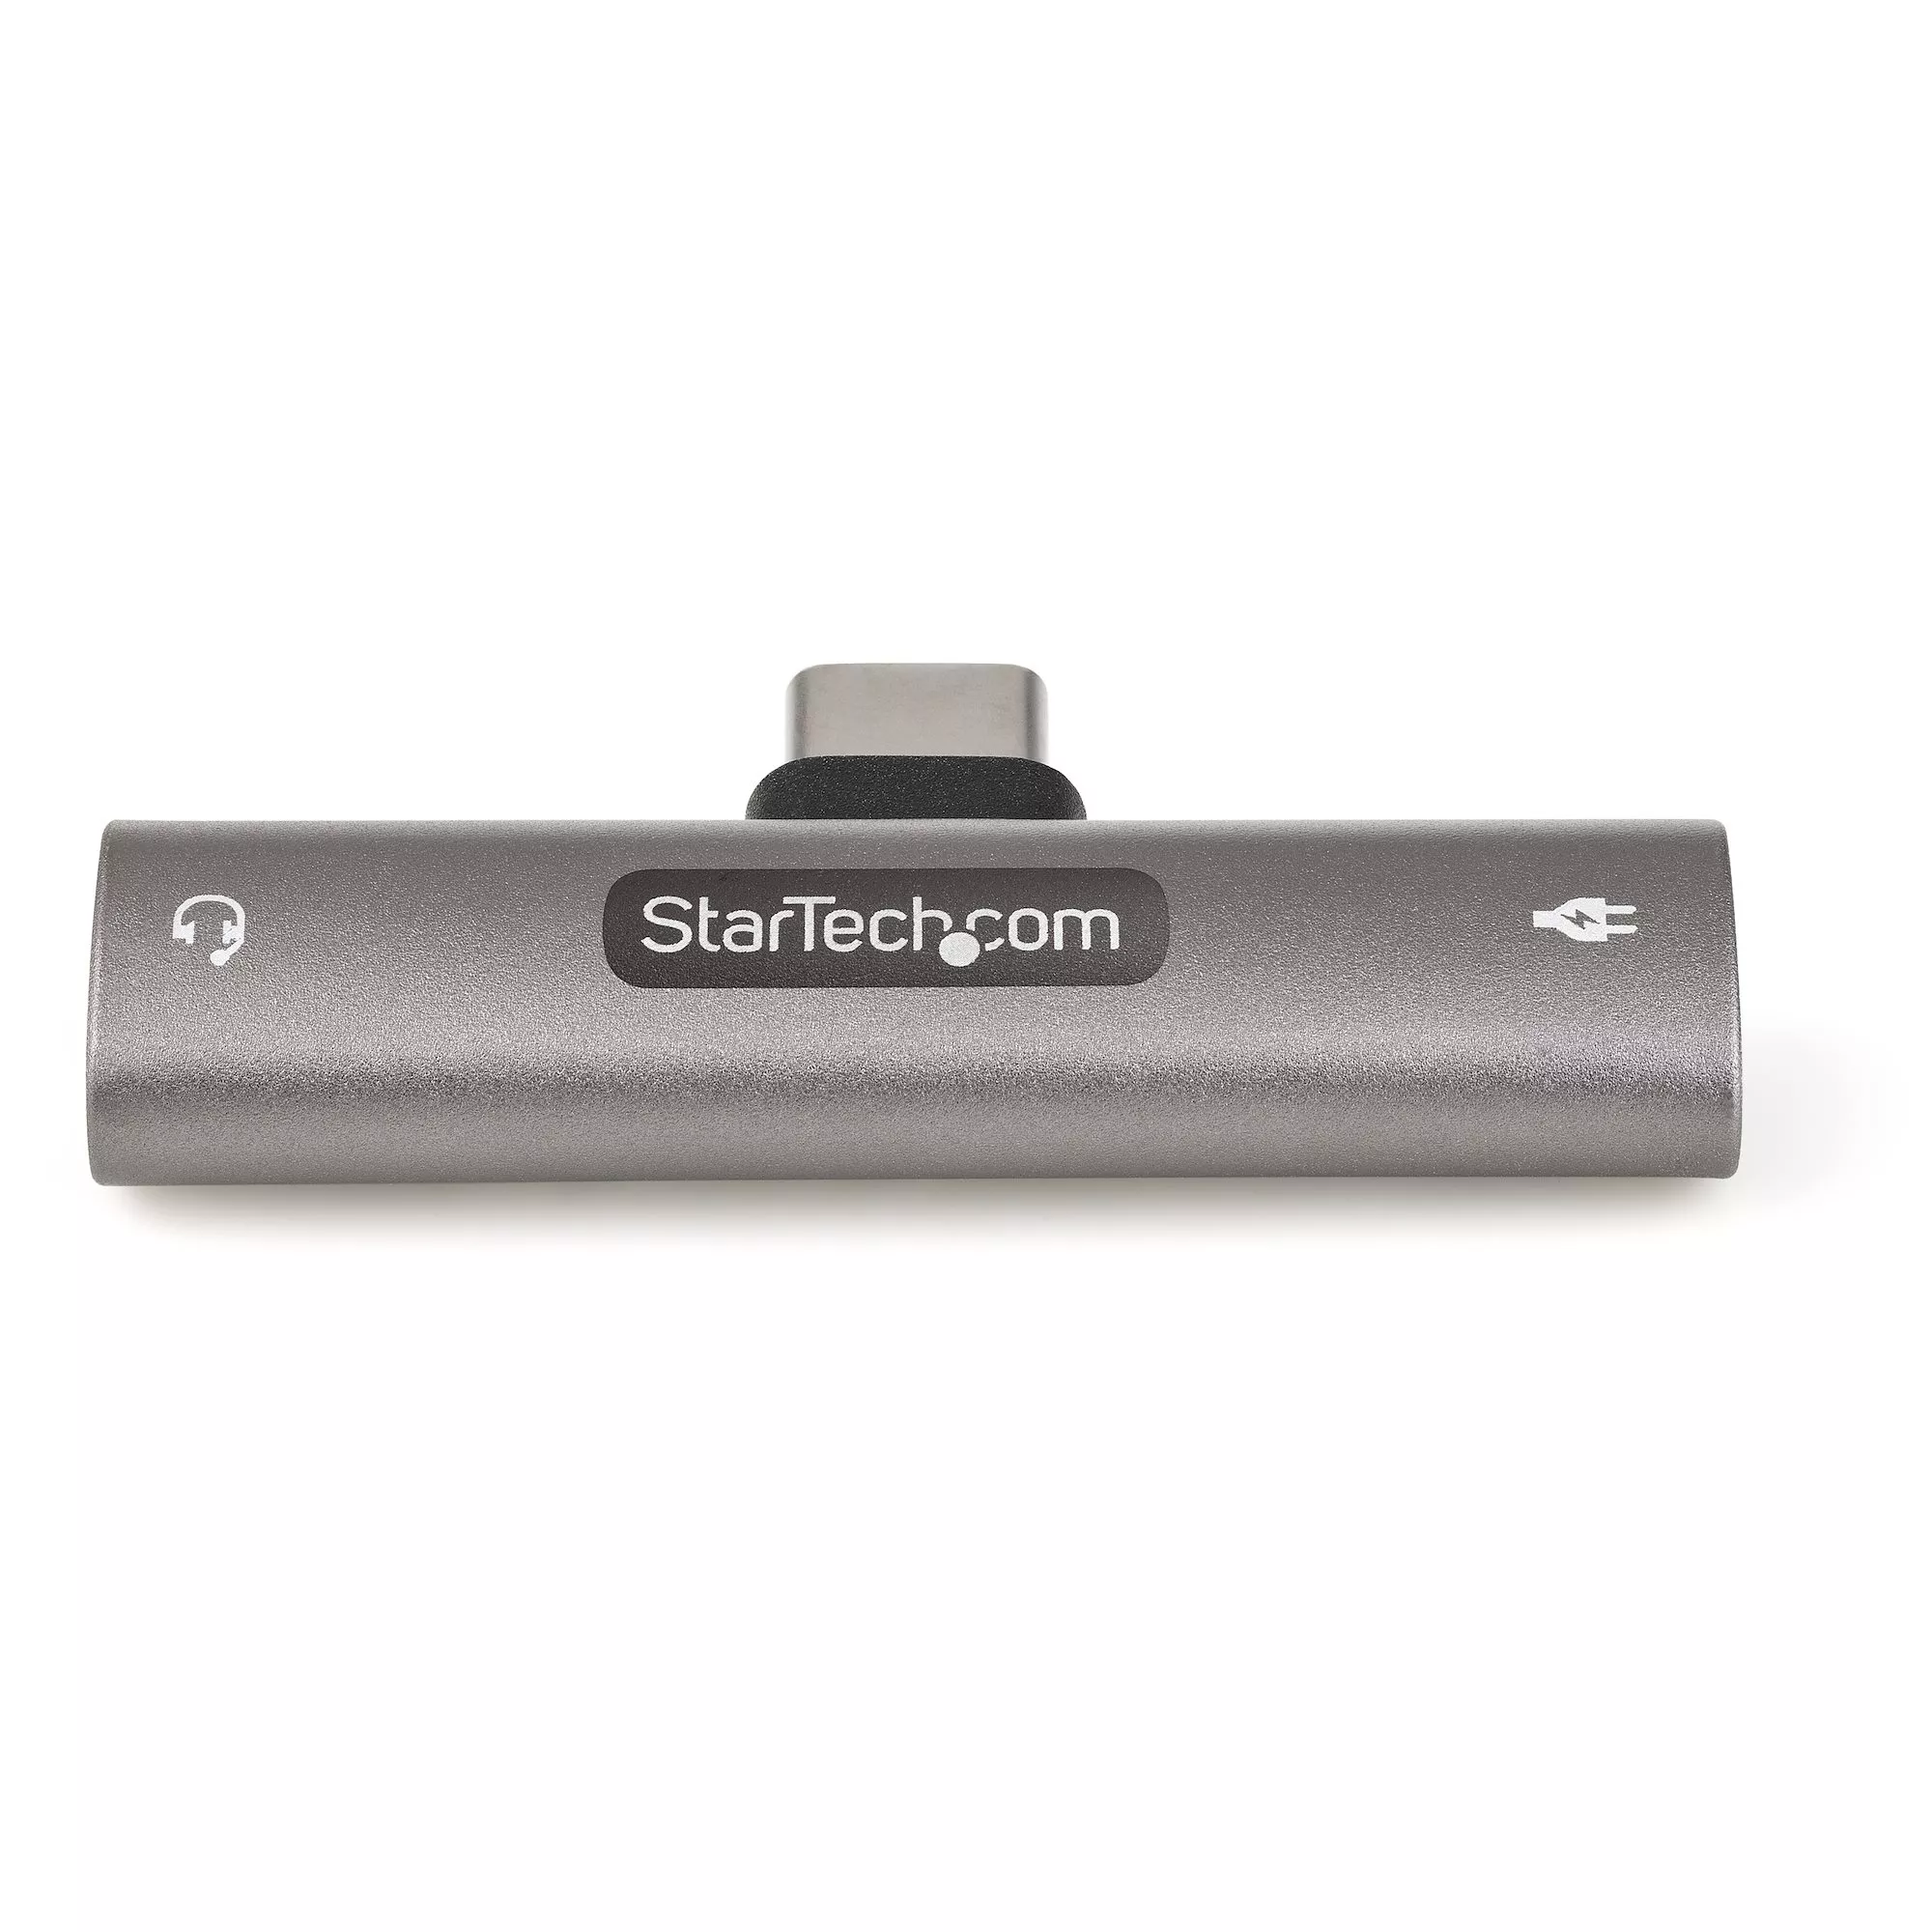 Vente StarTech.com Adaptateur USB-C Audio & Chargeur StarTech.com au meilleur prix - visuel 2